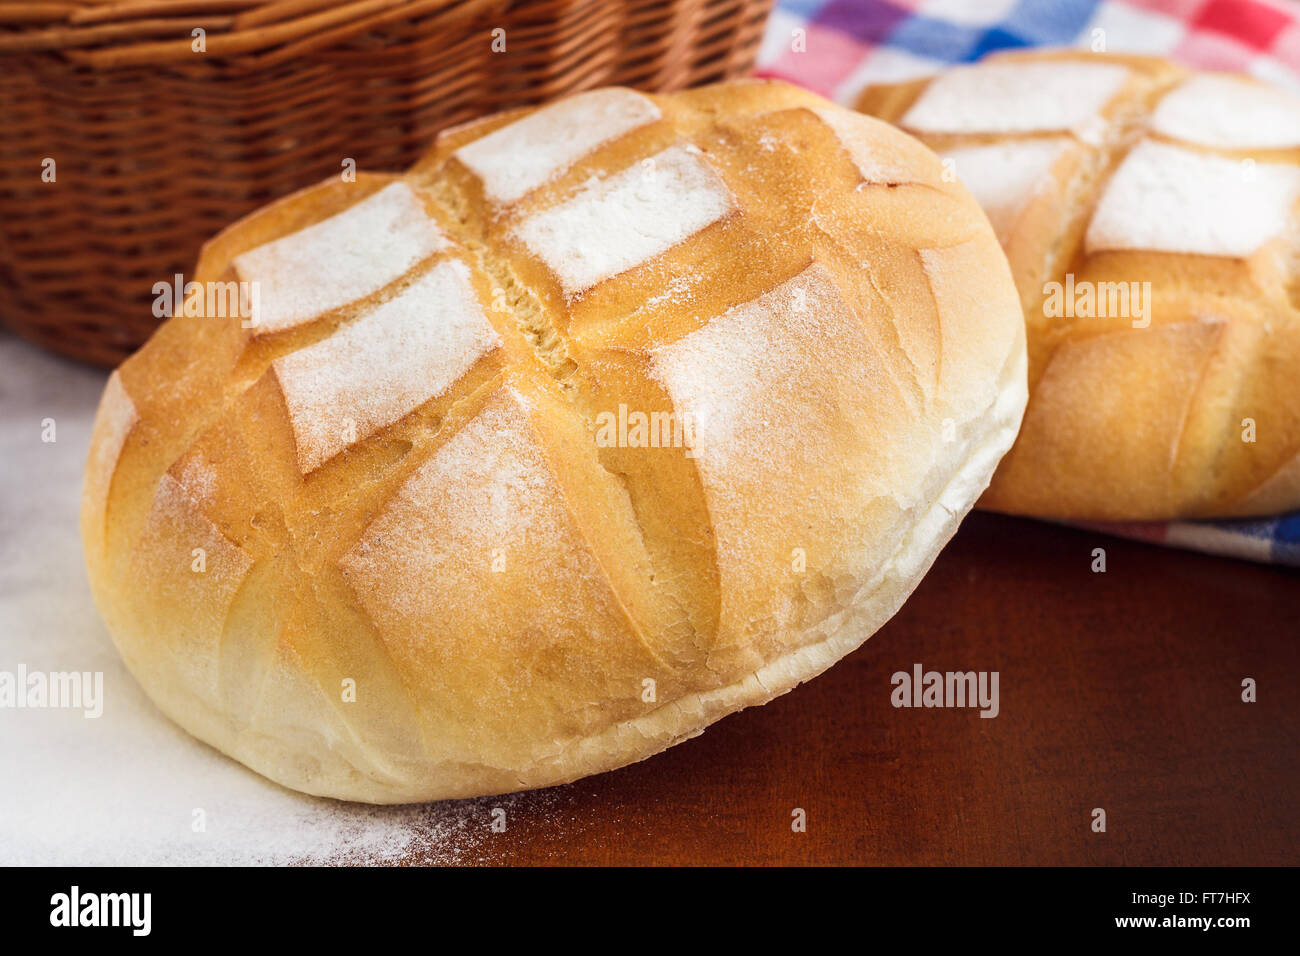 Runder Laib Brot mit Küche Lappen, Mehl und geflochtenen Korb Stockfoto